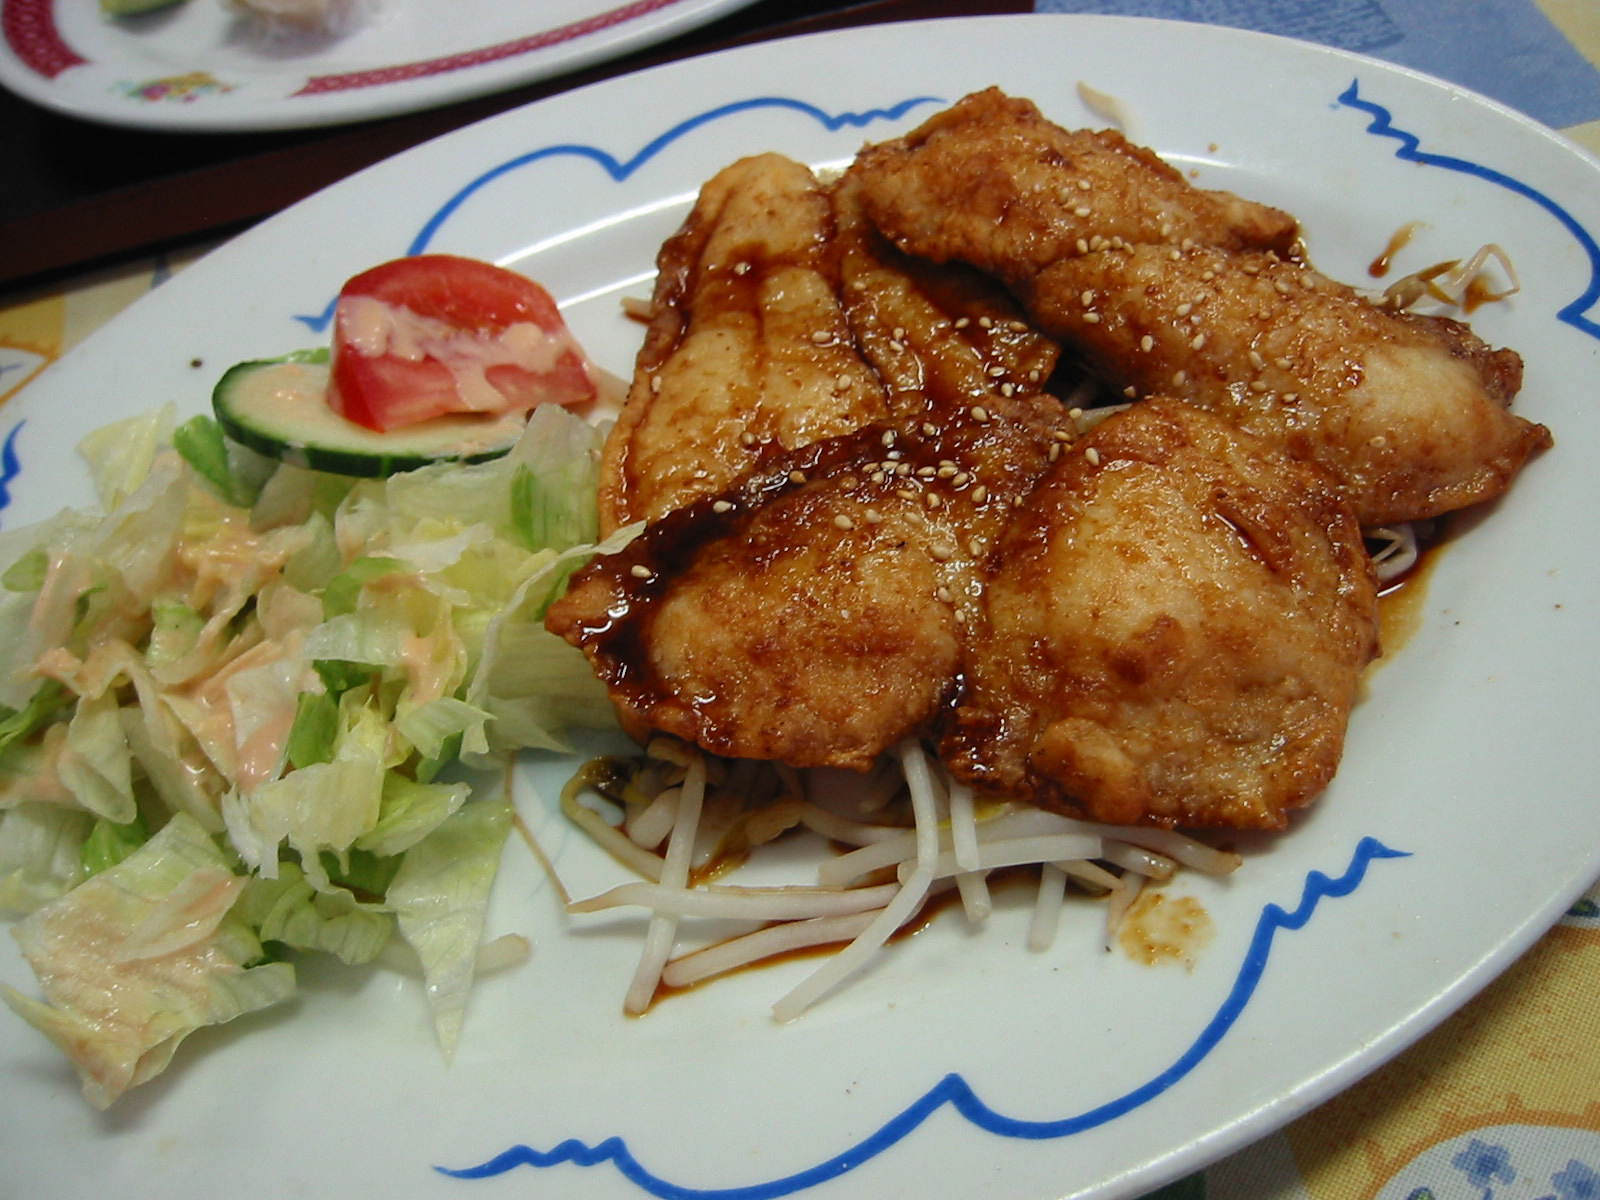 Teriyaki fish with salad